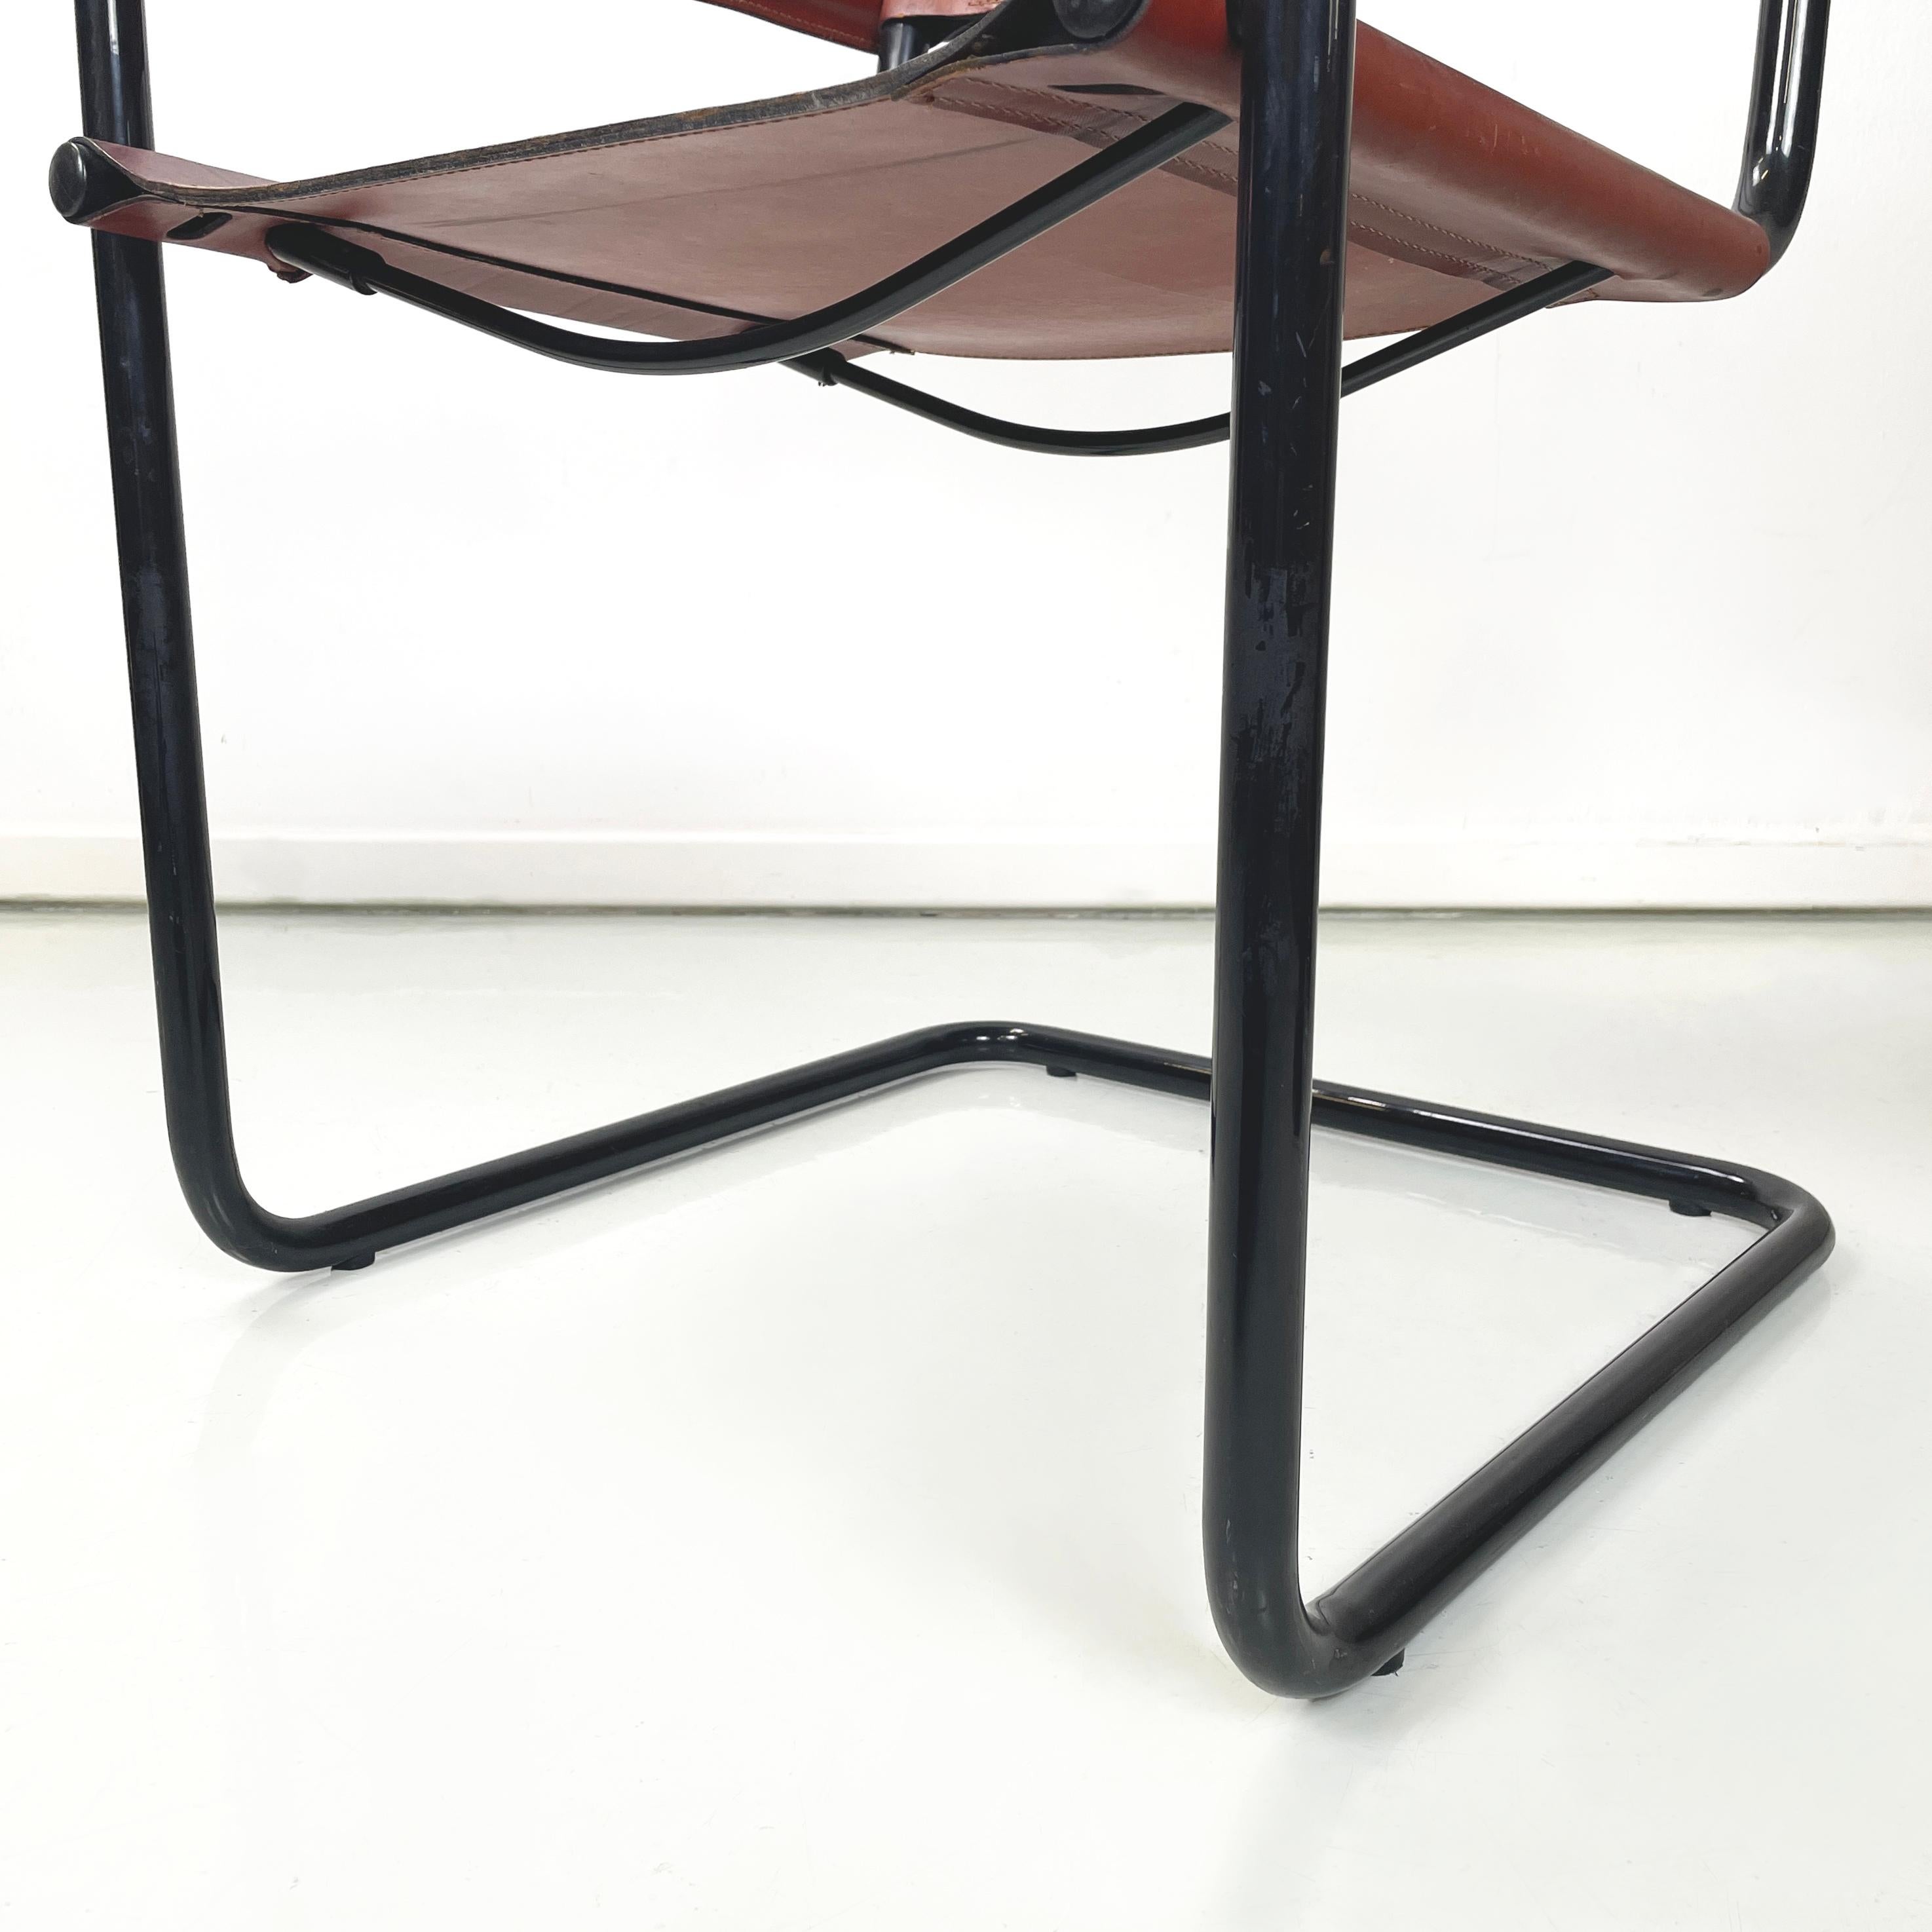 Chaise de salle à manger moderne italienne MG5 de Marcel Breuer et Mart Stam pour Matteo Grassi, années 1970
Chaise mod. MG5 avec dossier et assise en bande de cuir marron. La structure est en tubes métalliques peints en noir. Les accoudoirs sont